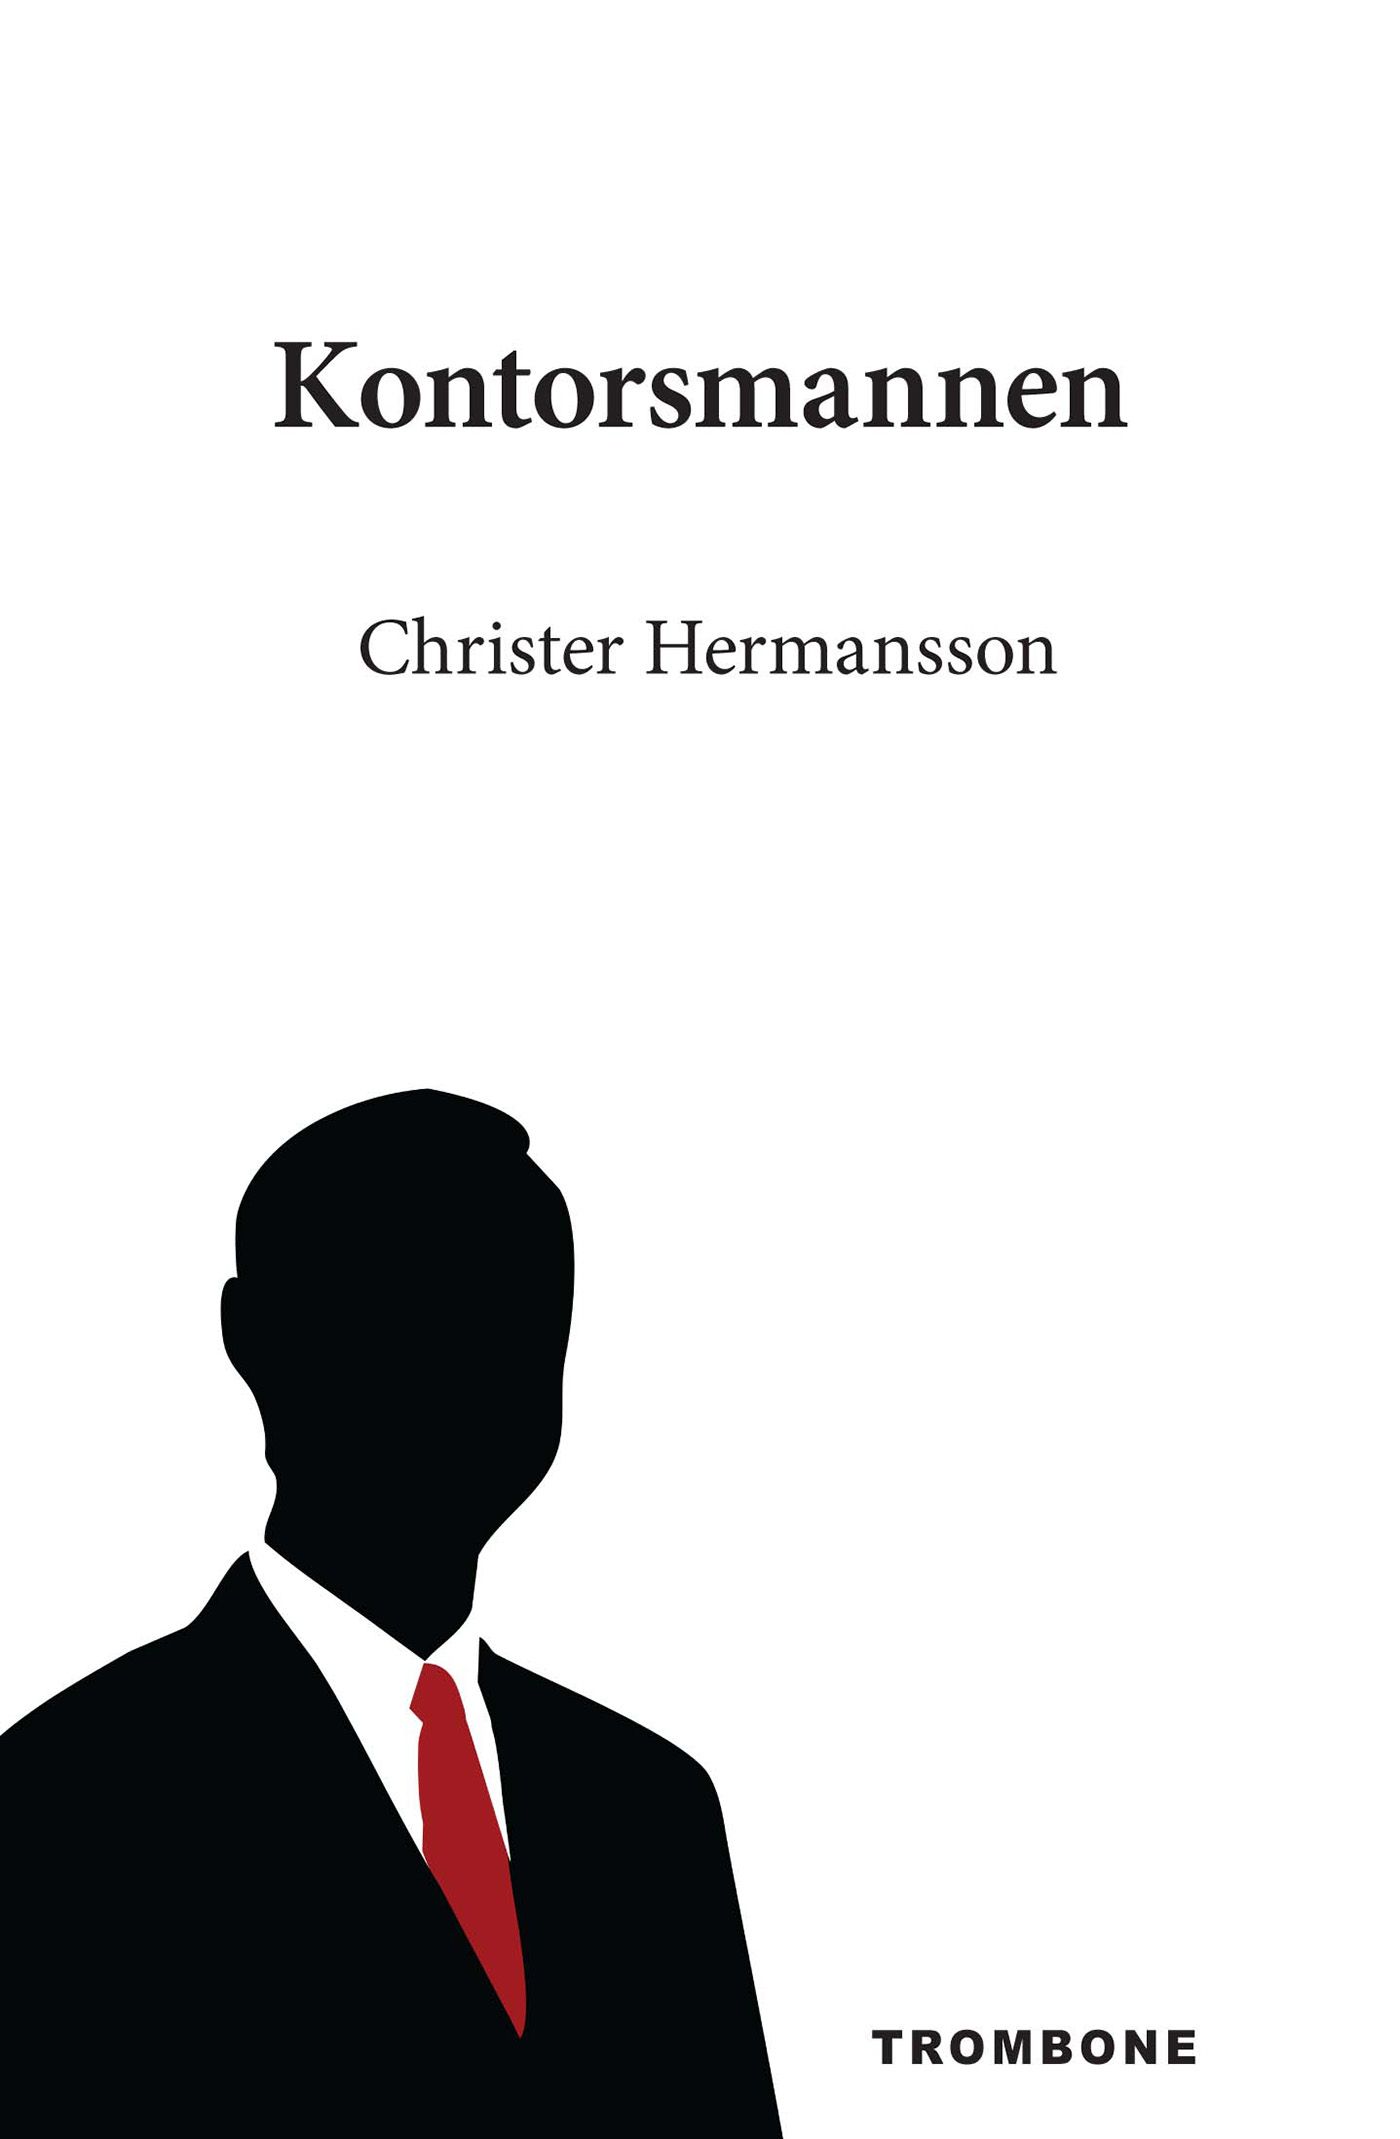 Kontorsmannen, e-bog af Christer Hermansson